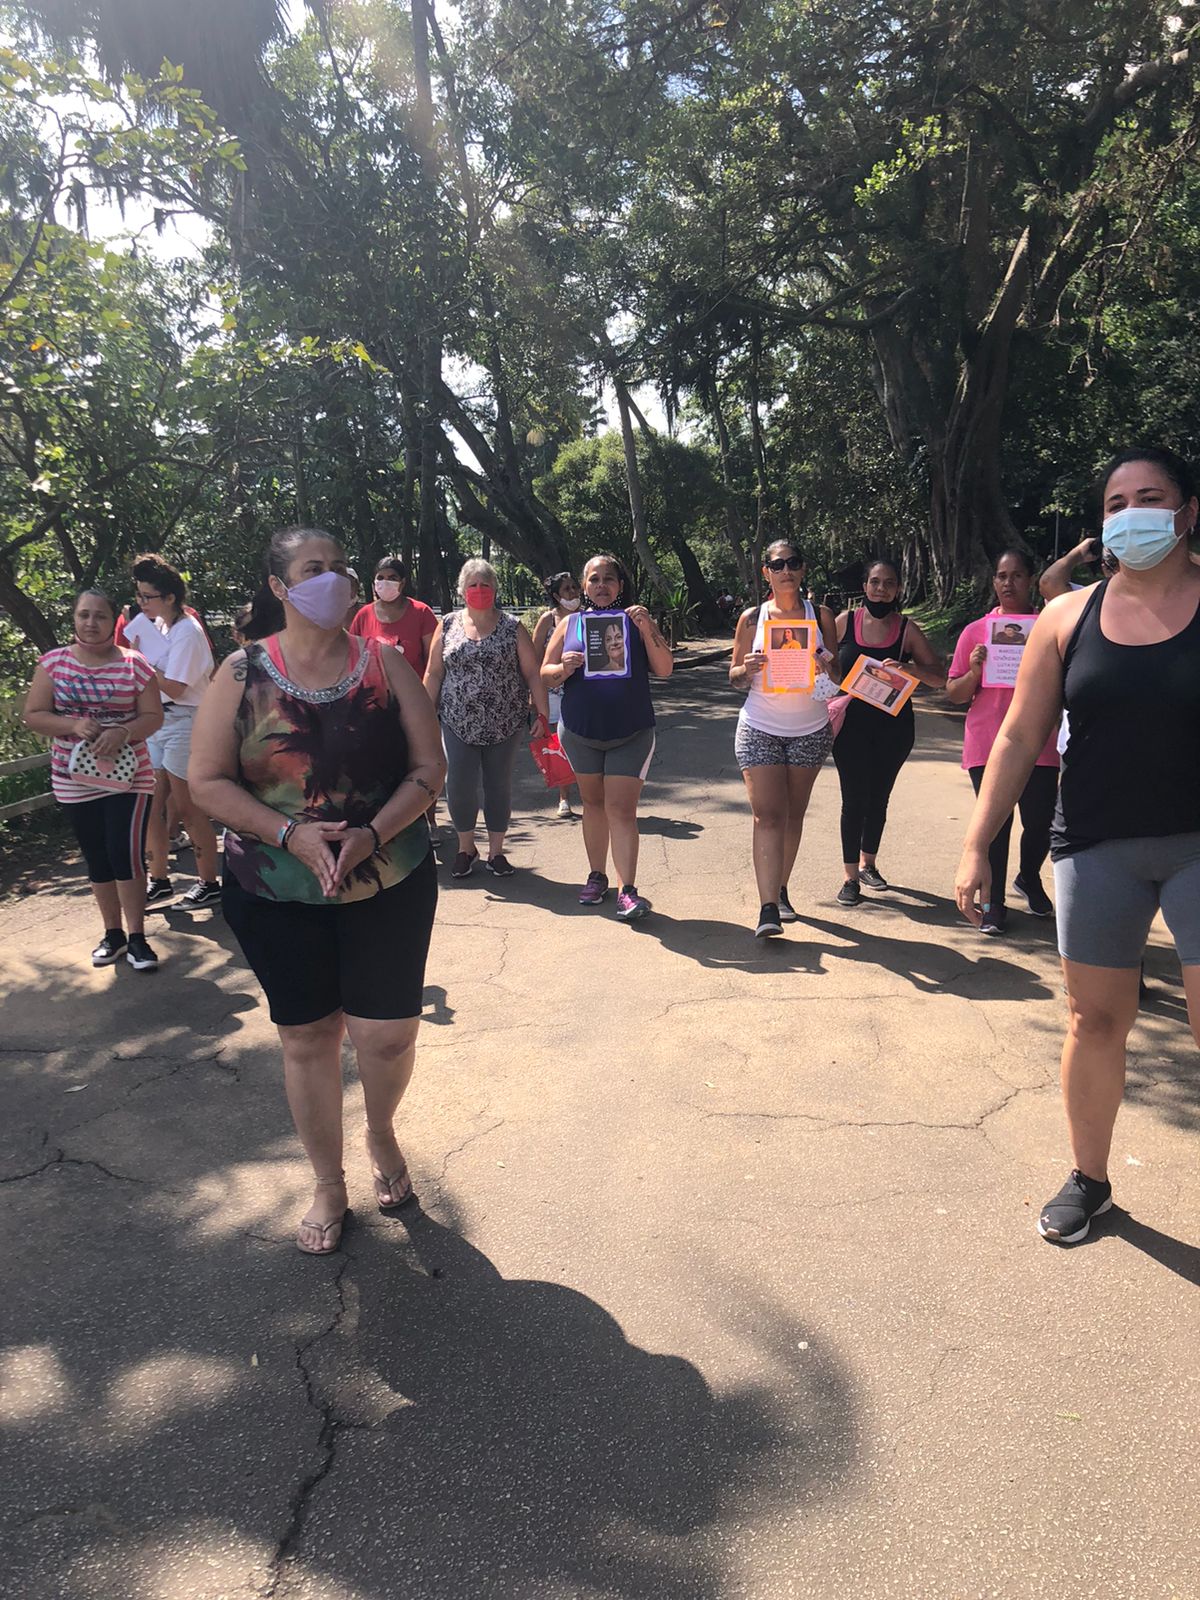 Imagem mostra mulheres caminhando no parque com cartazes em mãos, todas utilizando máscara.